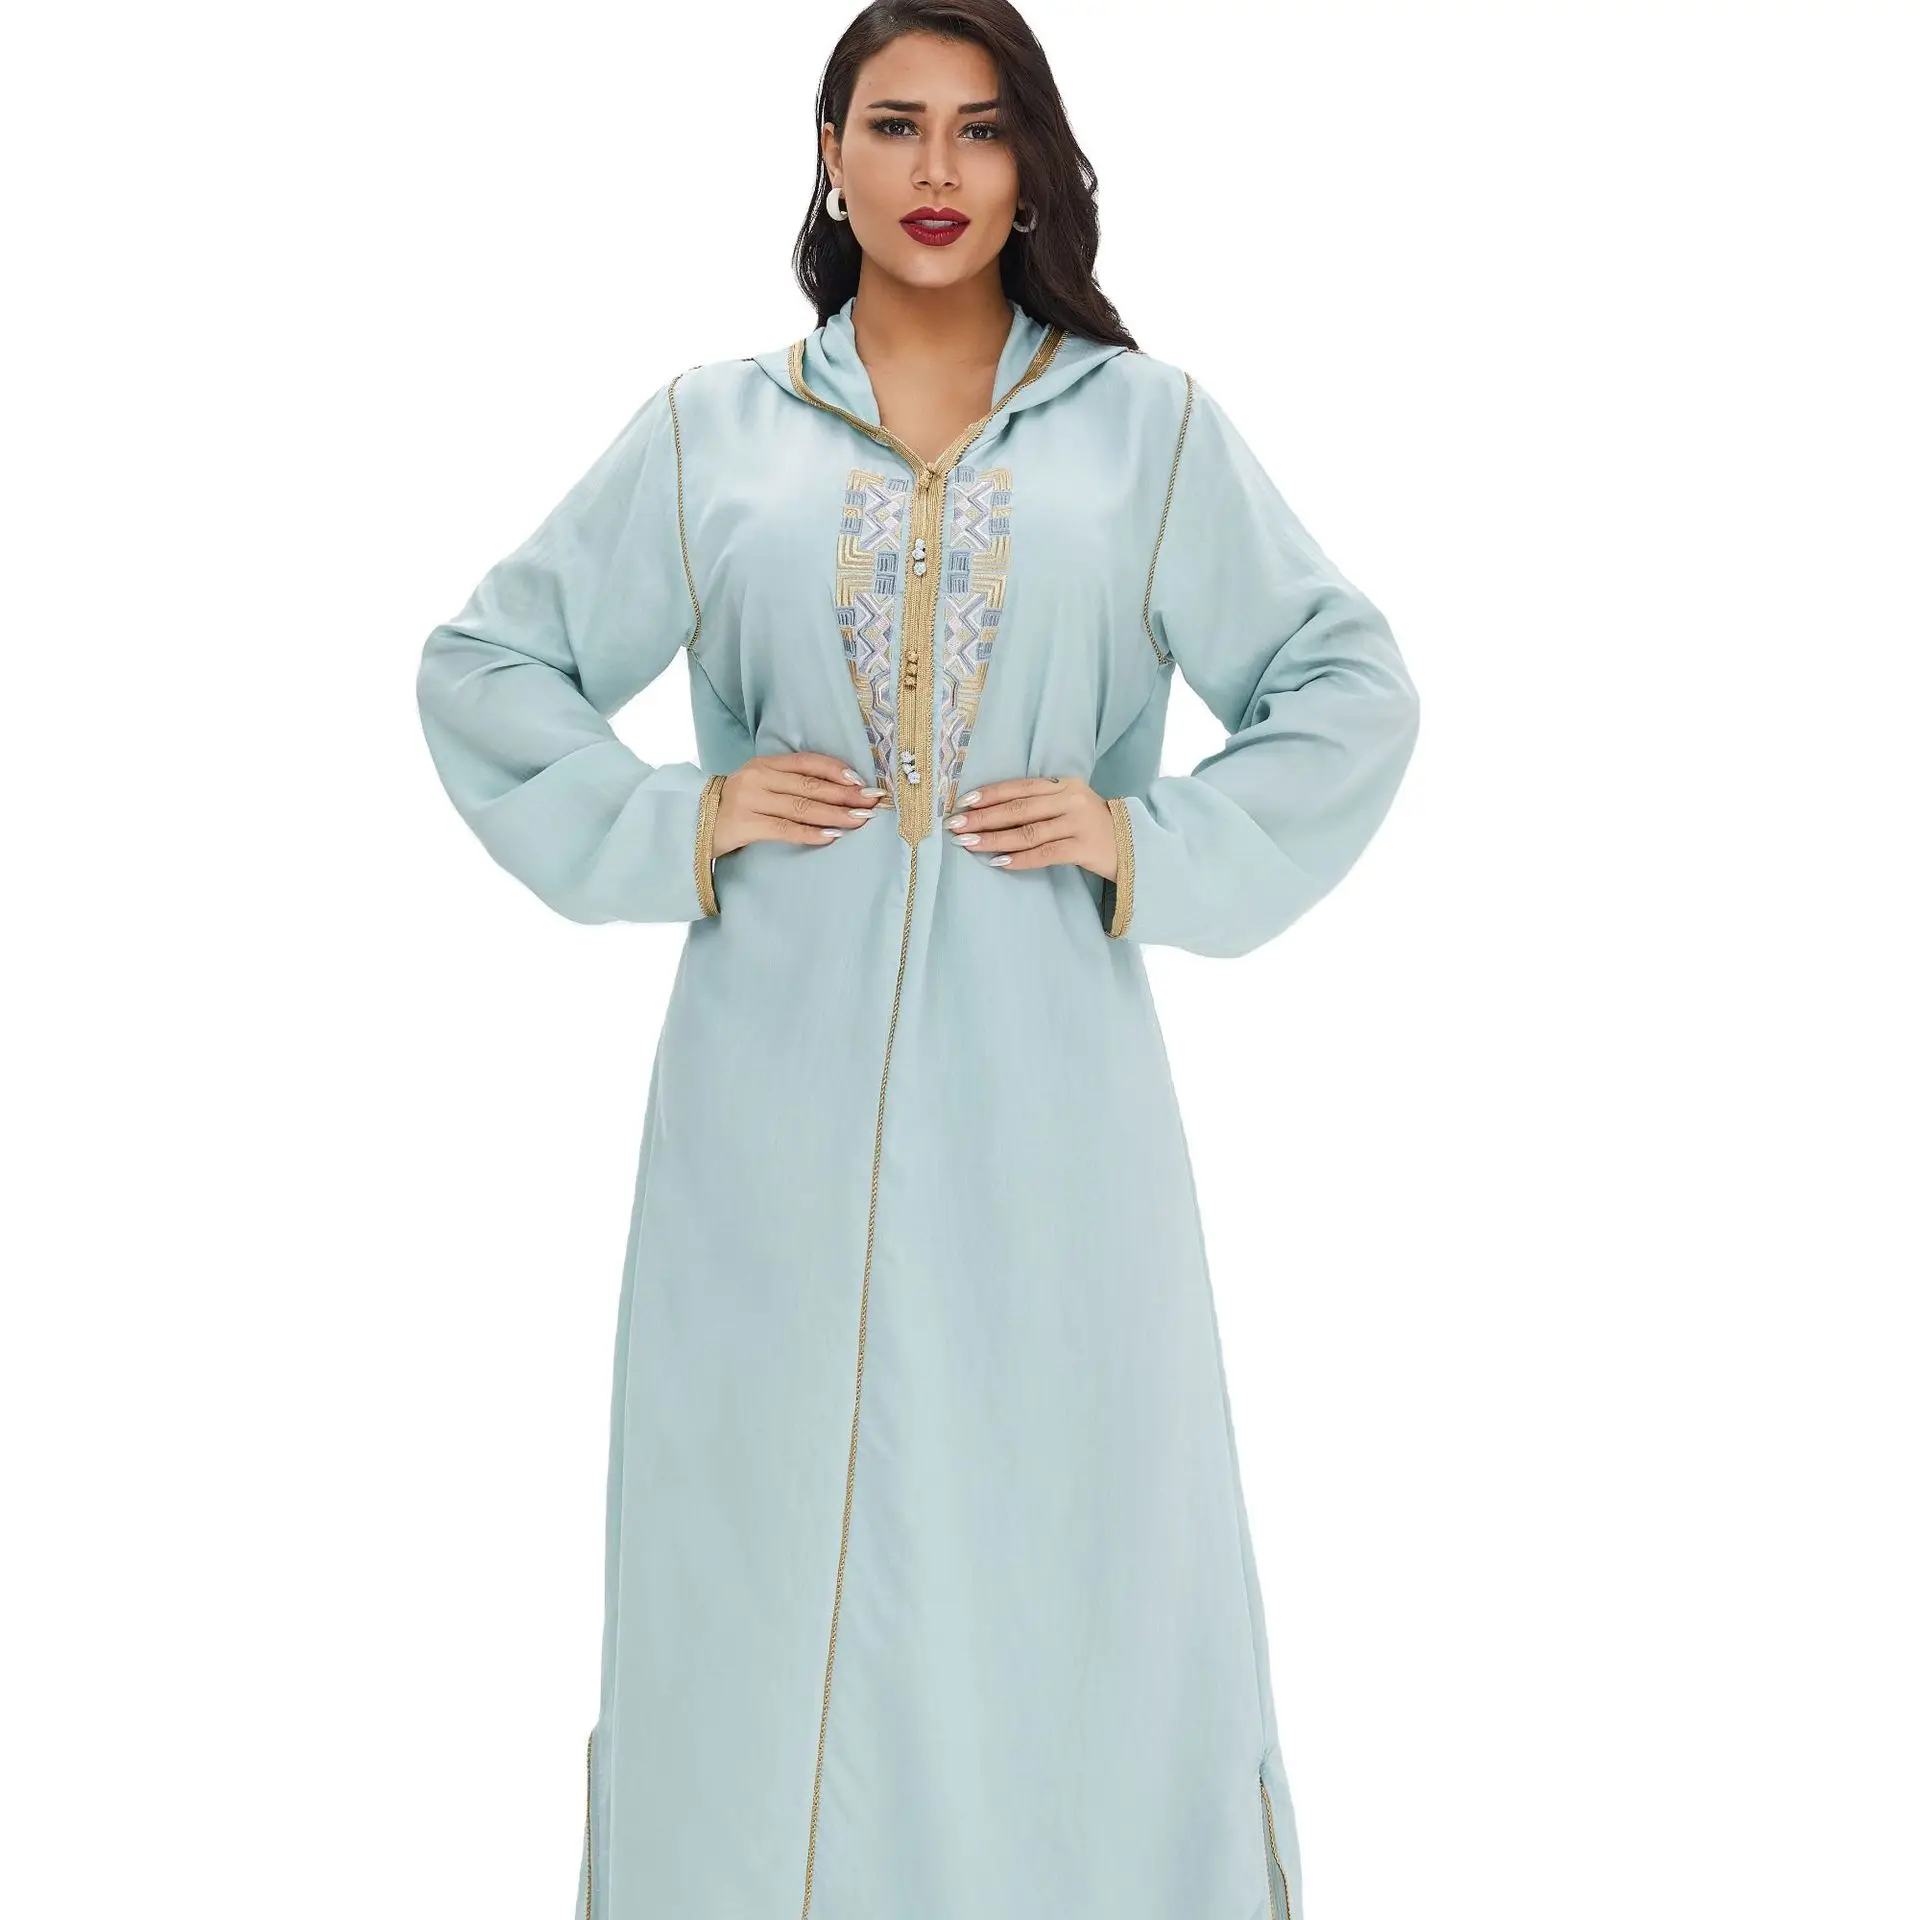 Мусульманское платье, хлопок, турецкий индийский, с оборками, с рукавами, с вышивкой, Abaya Duabi, арабский стиль, Vestidos Moroccon, кафтан, исламские вече...